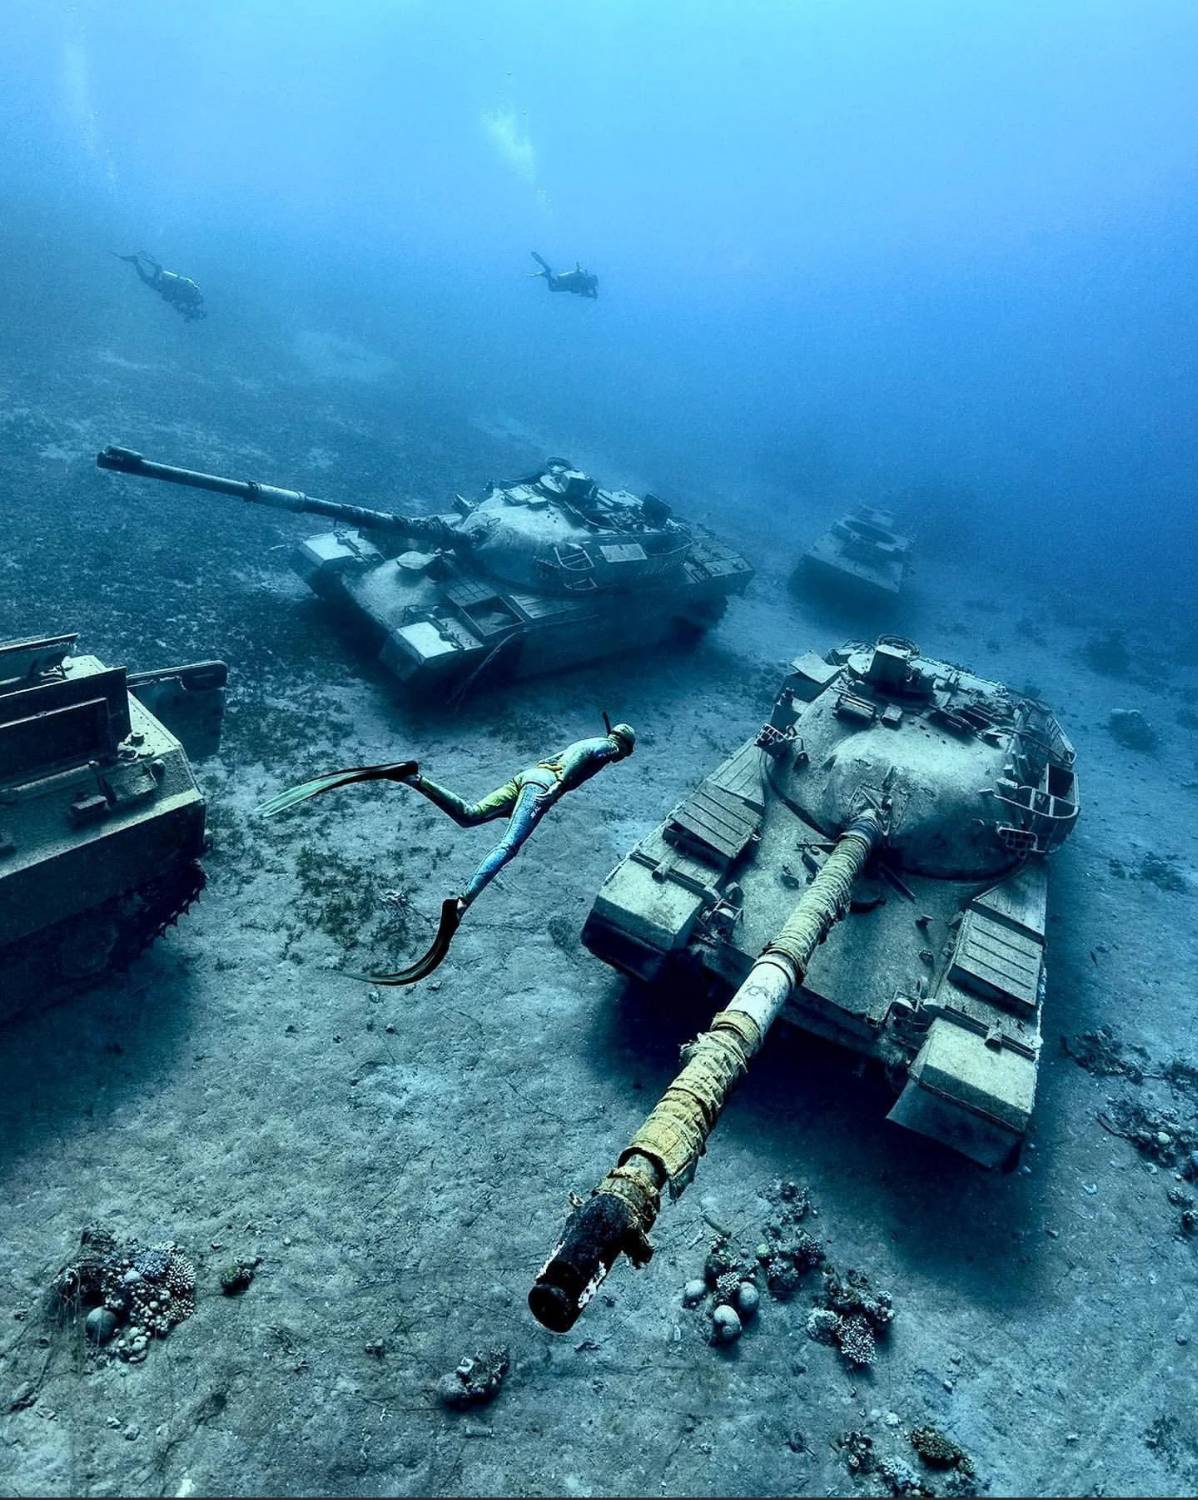 تانک چیفتن اردنی بعد از خدمت خارج شدن کف دریا رها شد تا تبدیل به مرجان های مصنوعی شوند